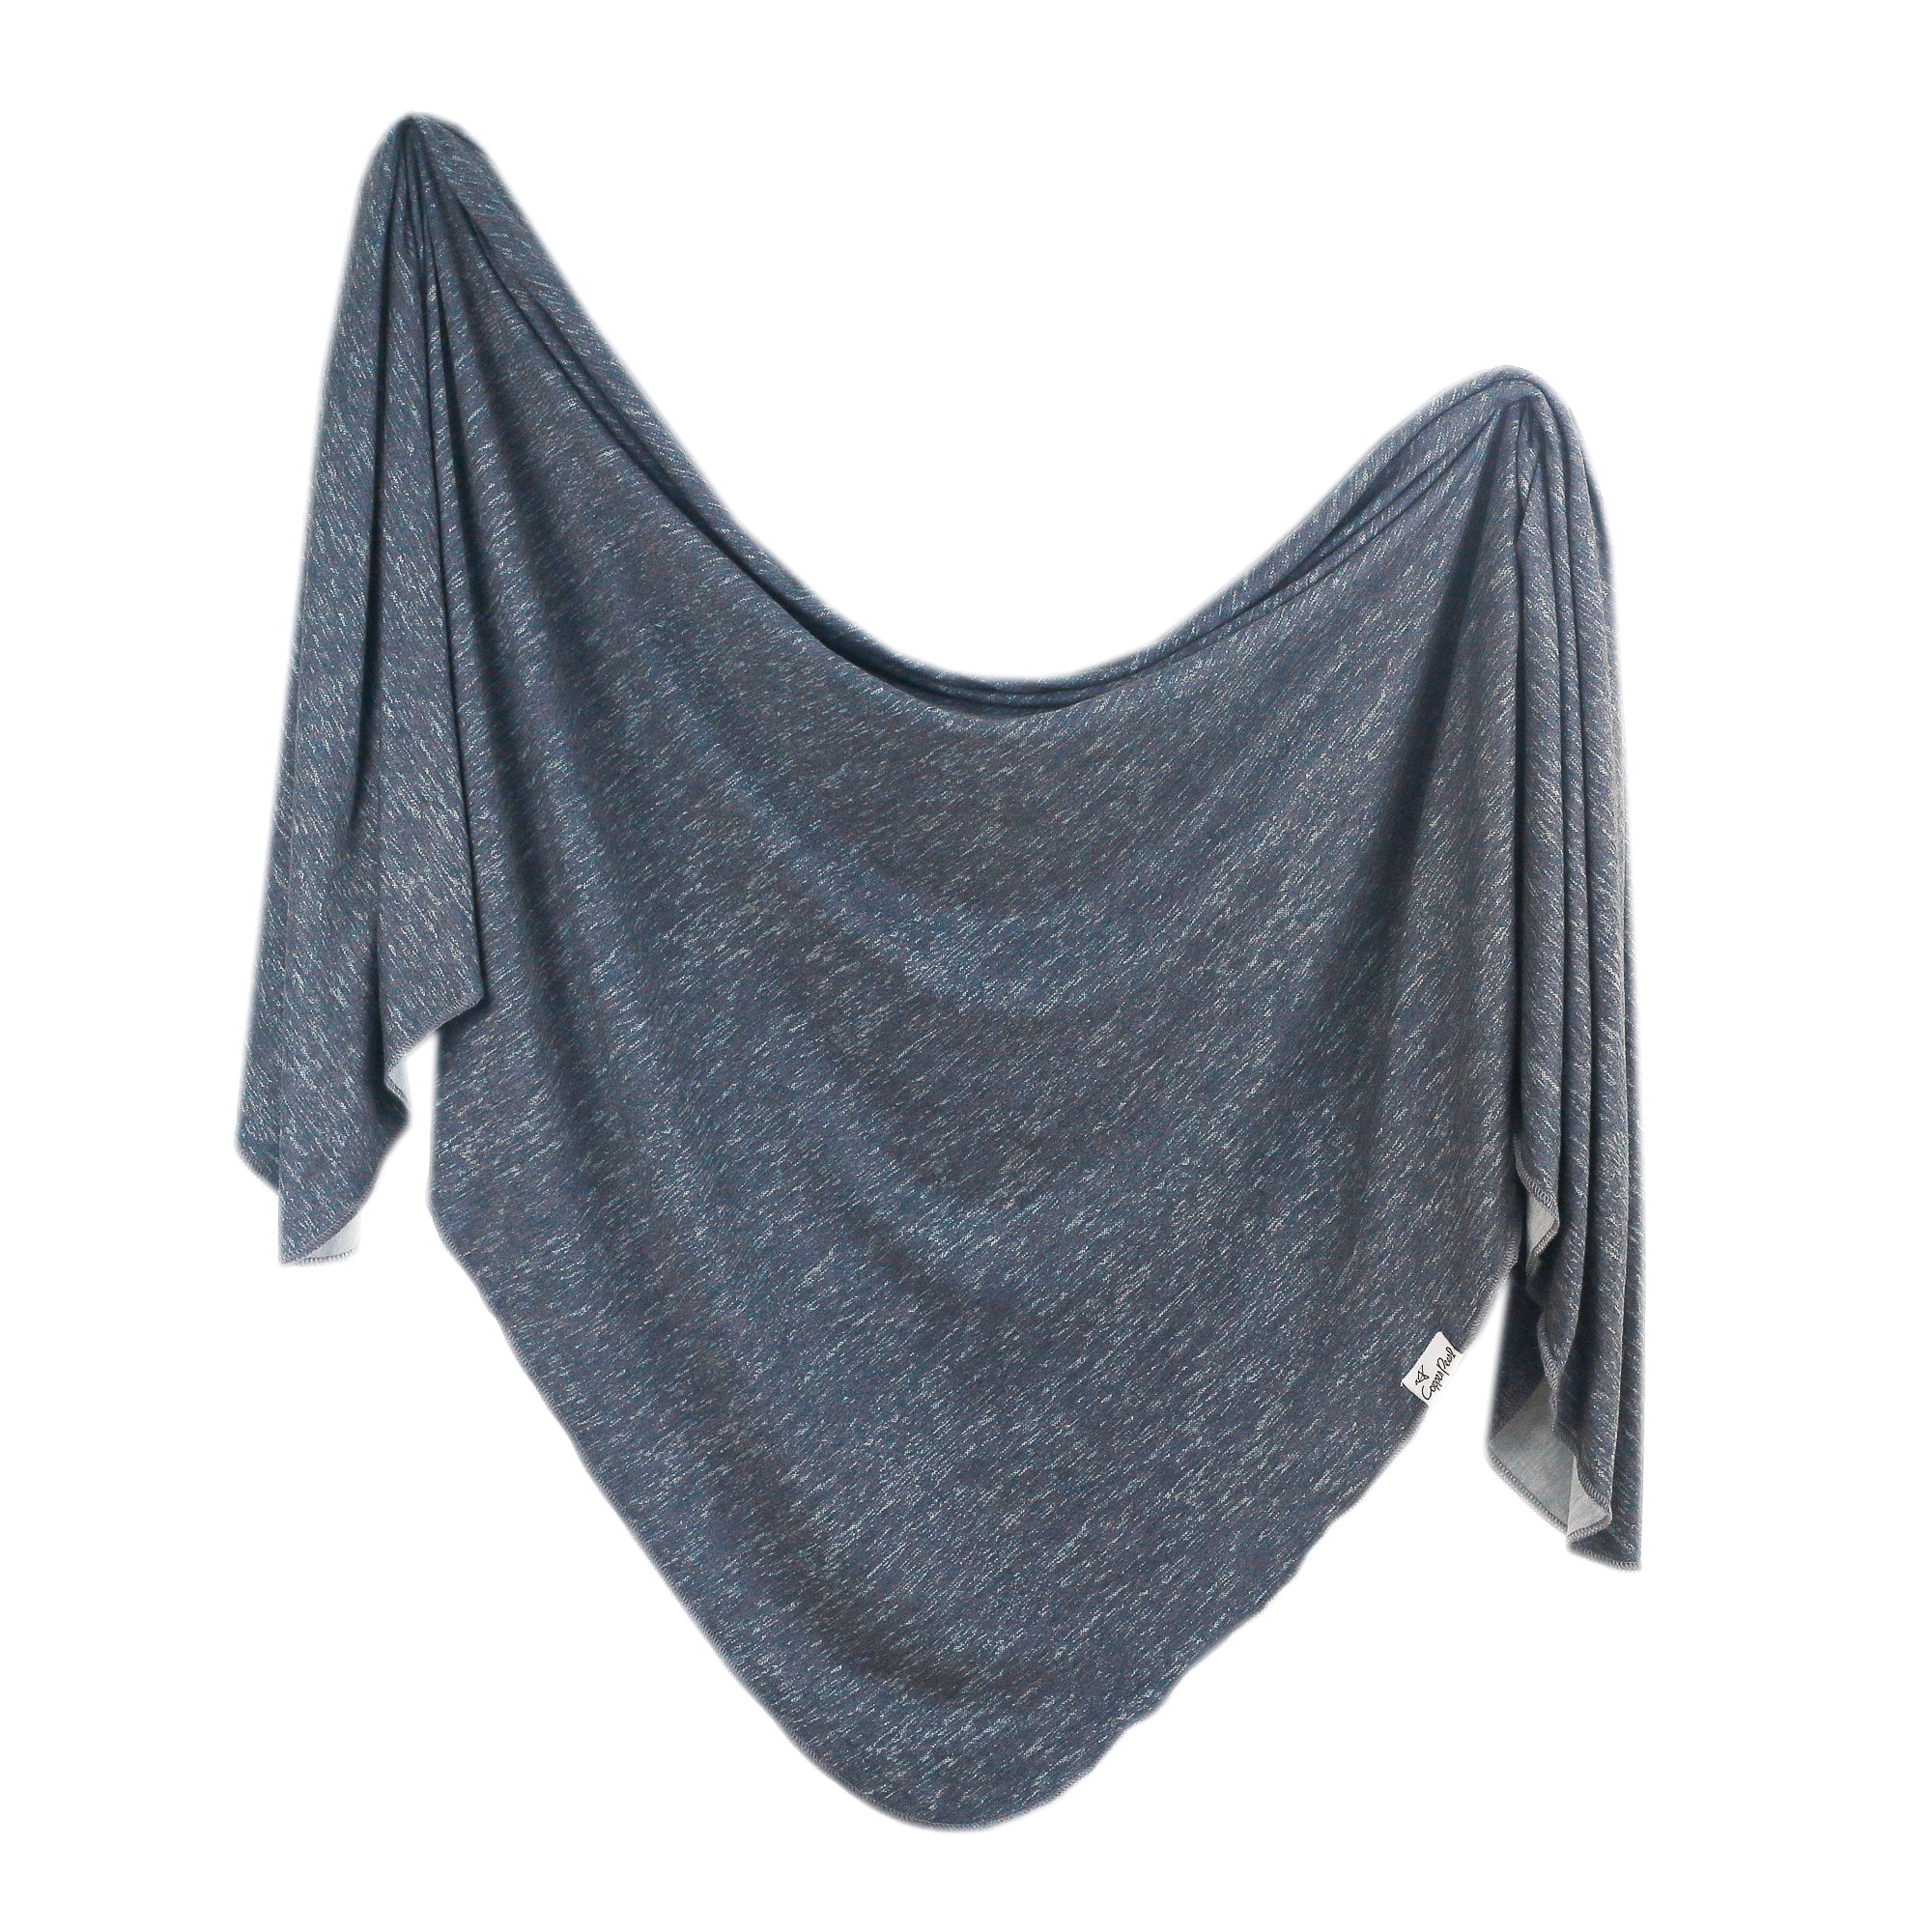 Knit Swaddle Blanket - Denim